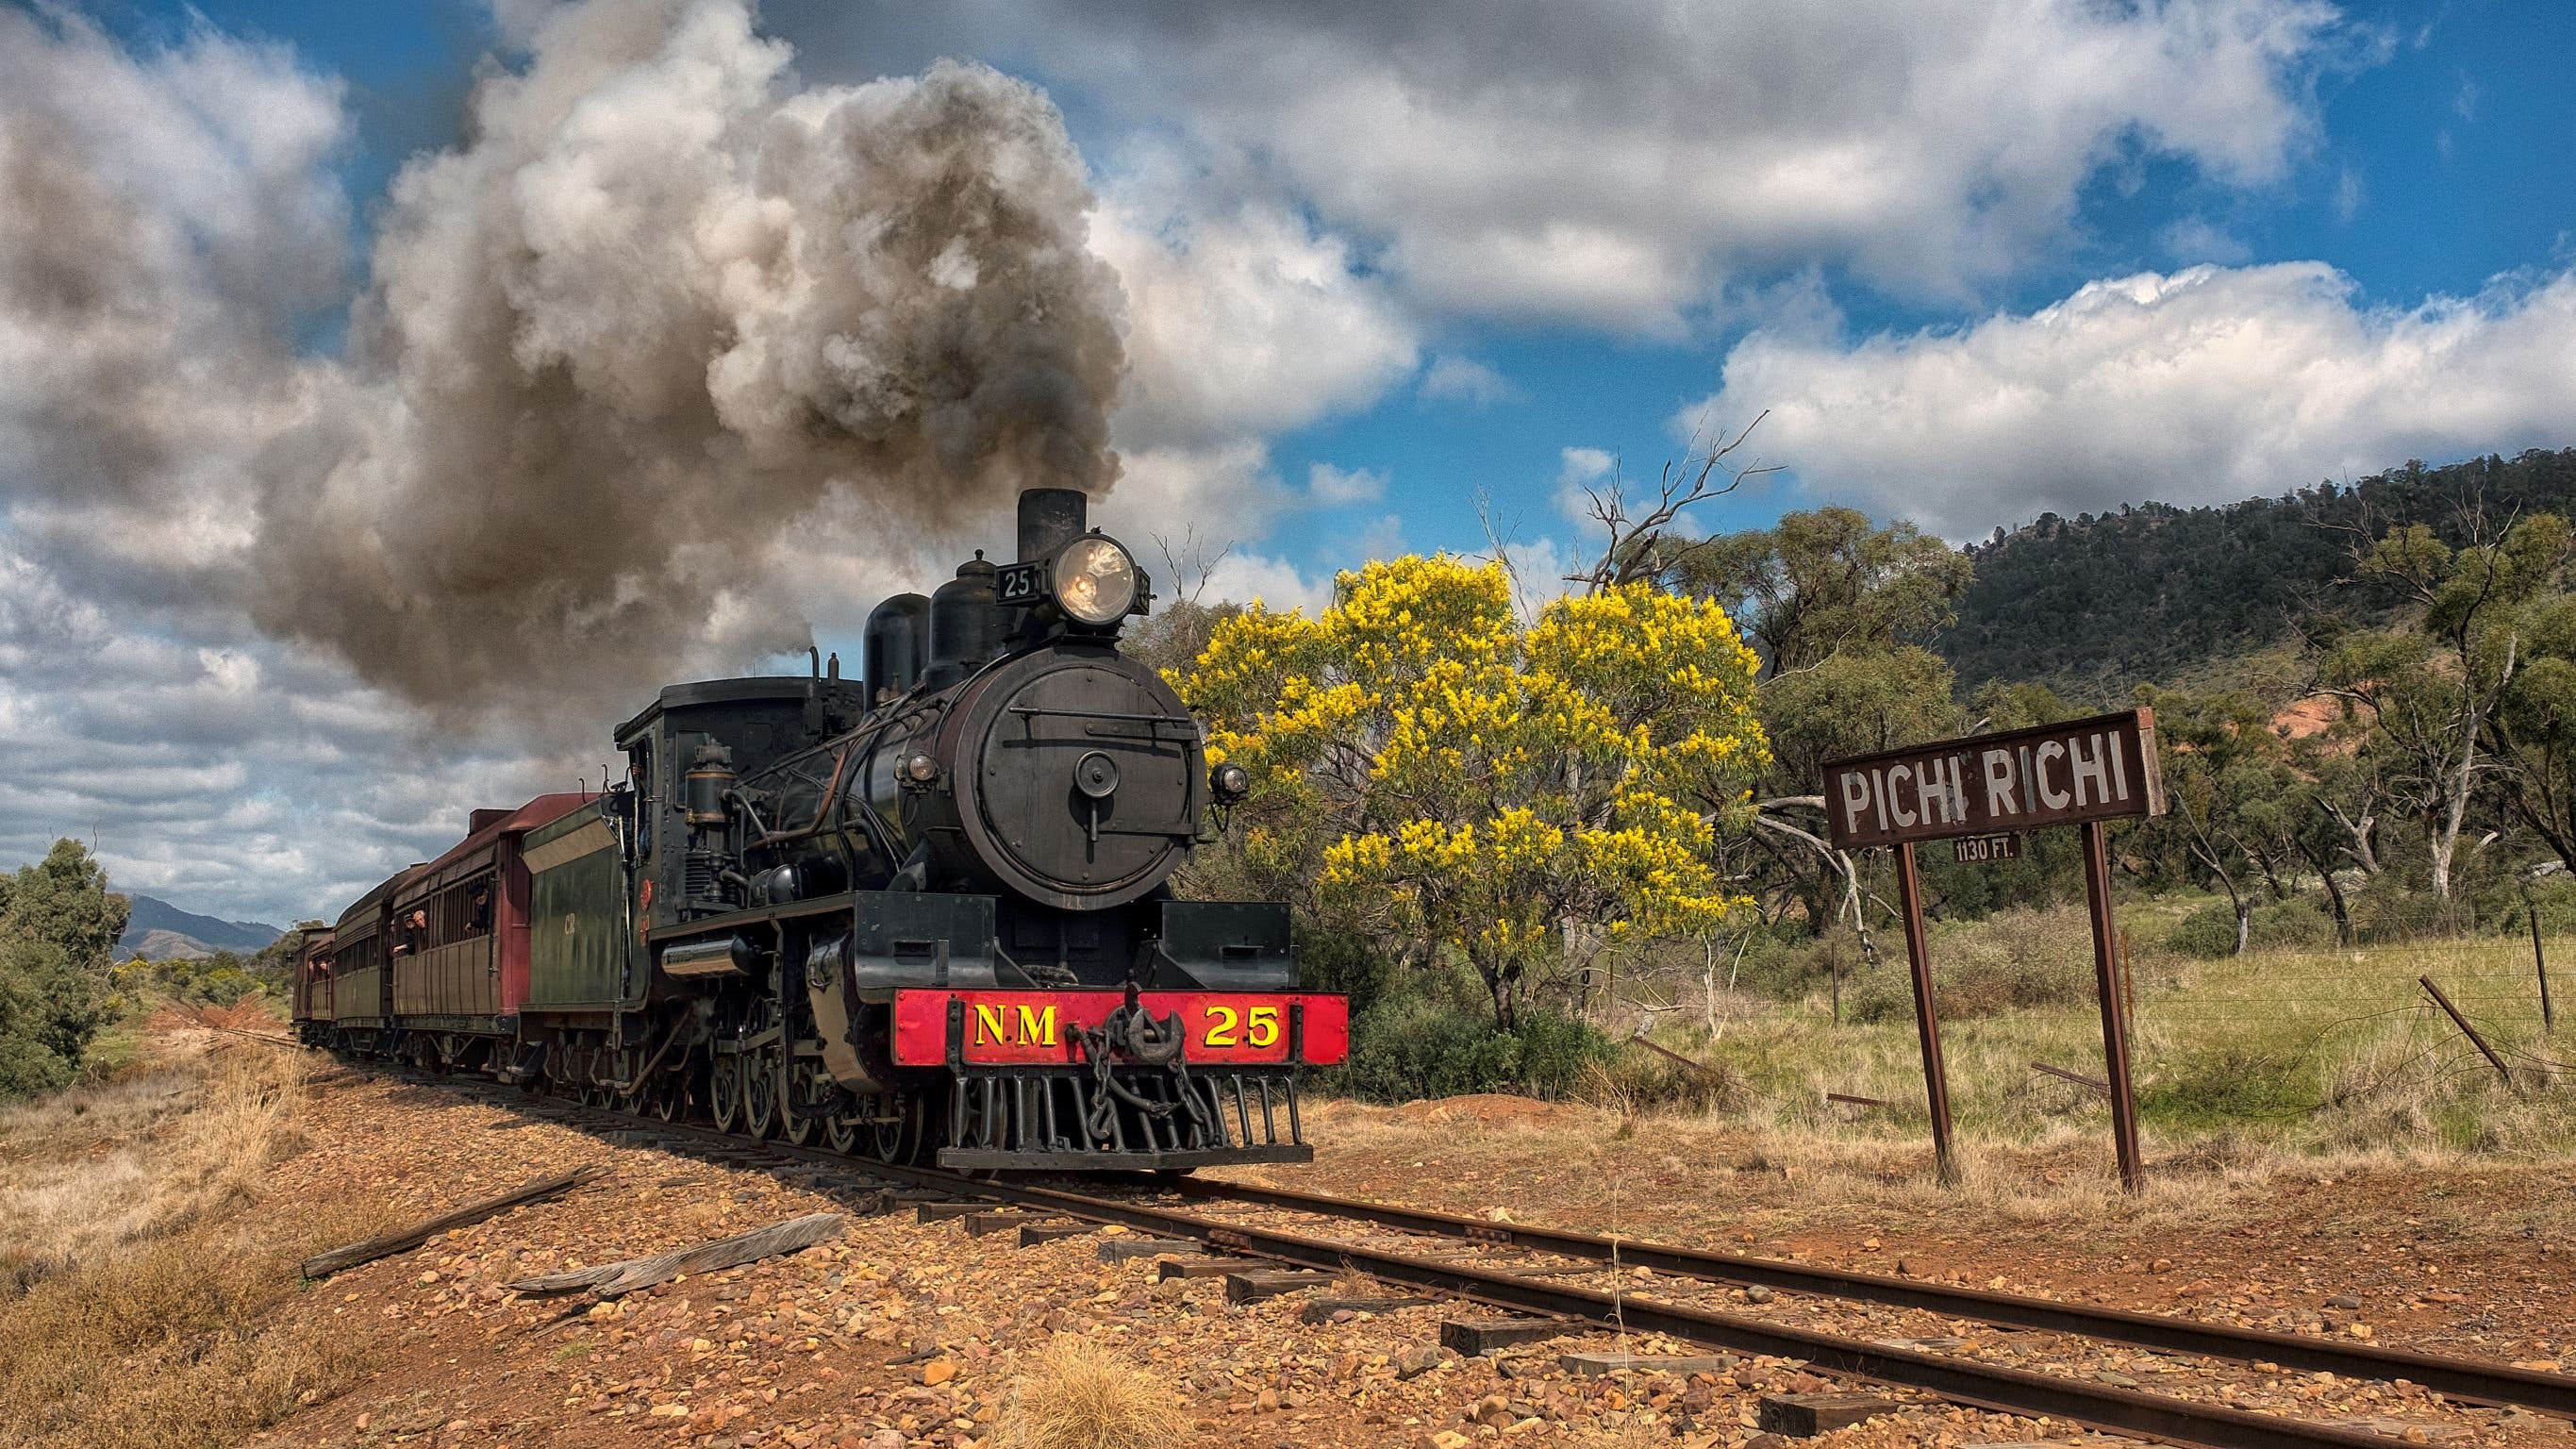 Pichi Richi Railway - Tourism Adelaide